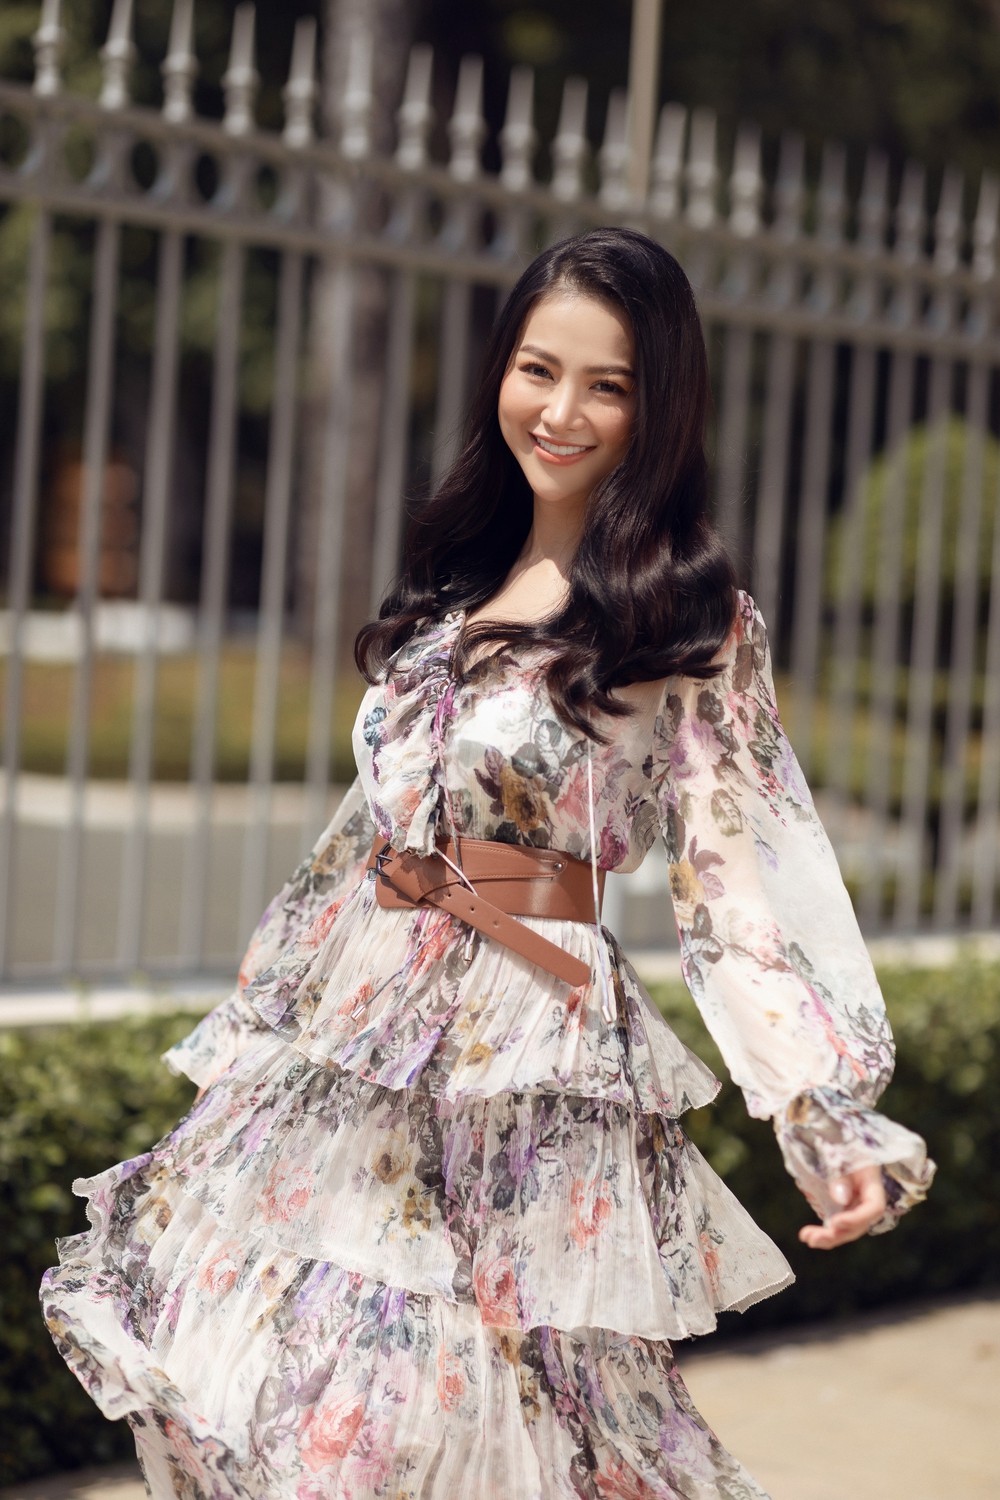 Hoa hậu Phương Khánh khoe vẻ gợi cảm sau thời gian ở ẩn - Ảnh 12.